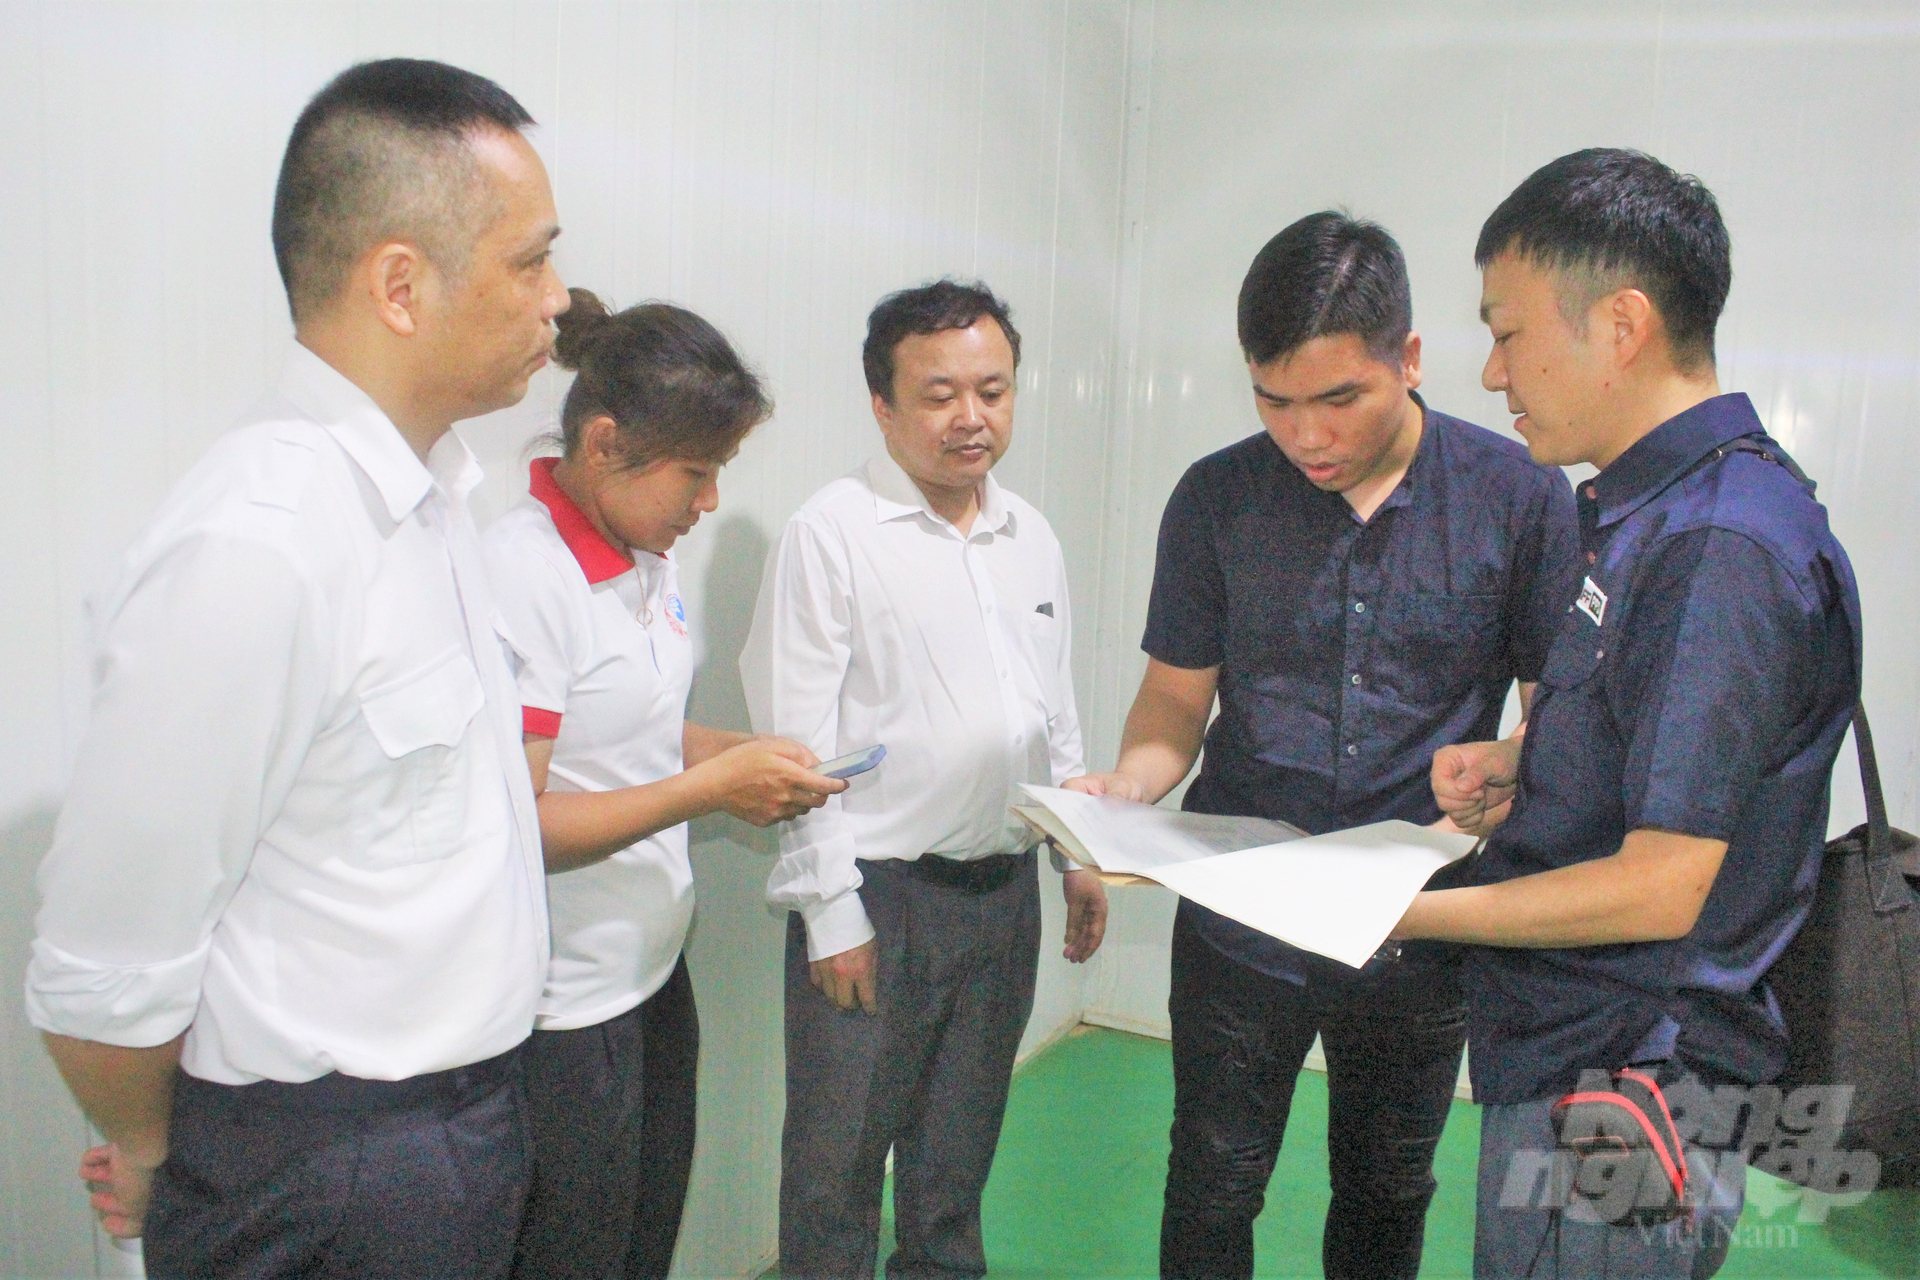 Cán bộ kiểm dịch thực vật của Cục Bảo vệ thực vật và các chuyên gia Nhật Bản cùng nhau tiến hành kiểm tra hệ thống xử lý quả vải tươi xuất khẩu sang Nhật Bản bằng Methyl Bromide của các doanh nghiệp Việt Nam. Ảnh: Trung Quân.